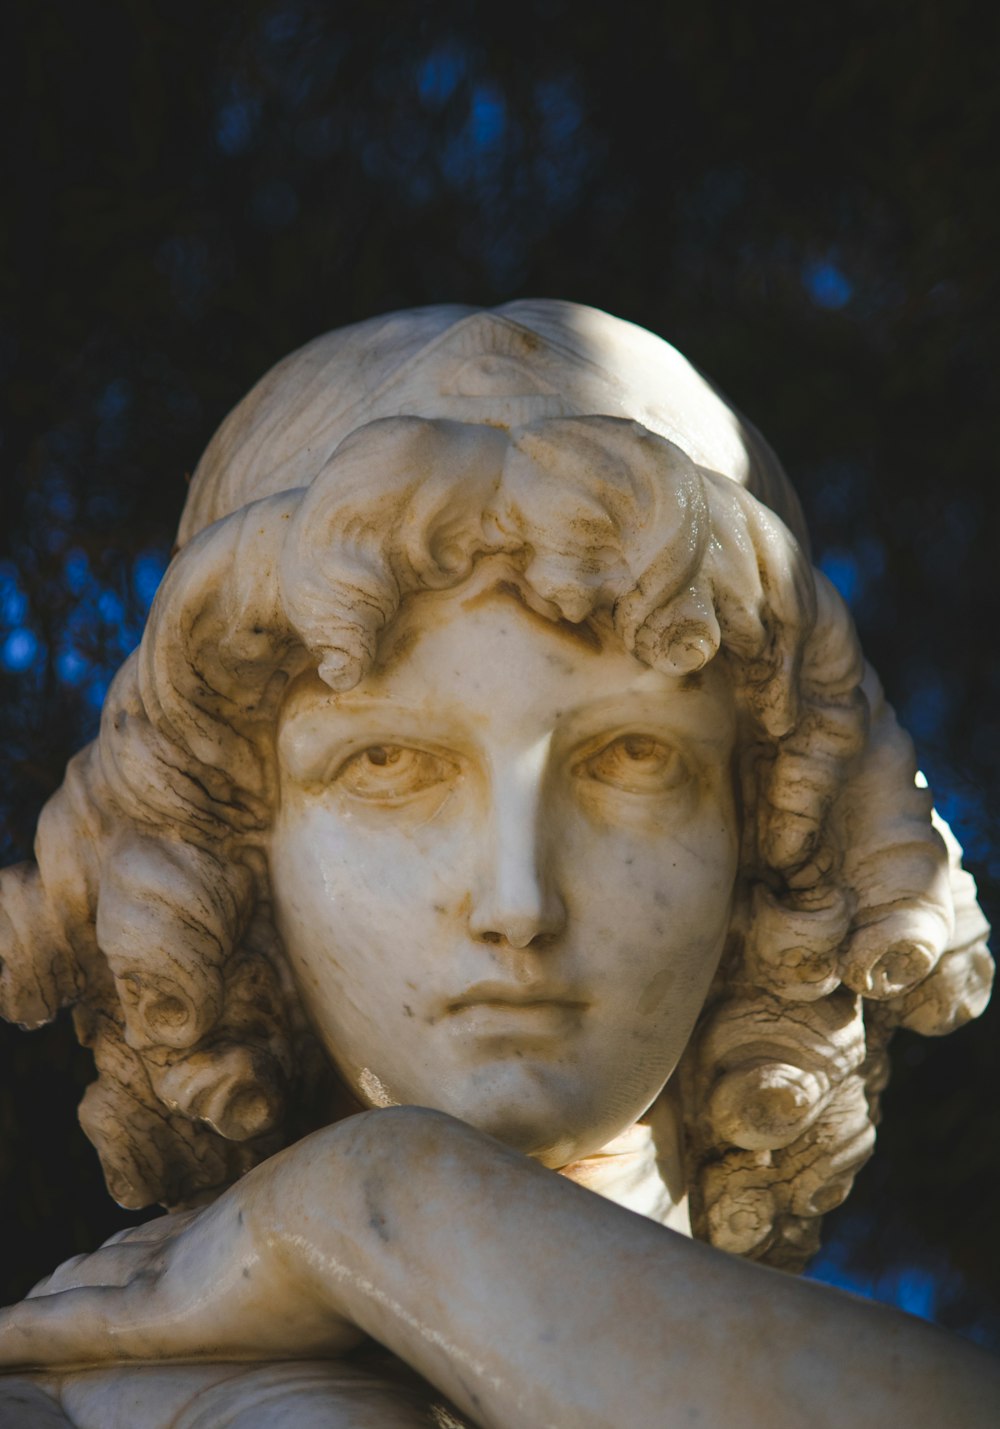 um close up de uma estátua de uma mulher